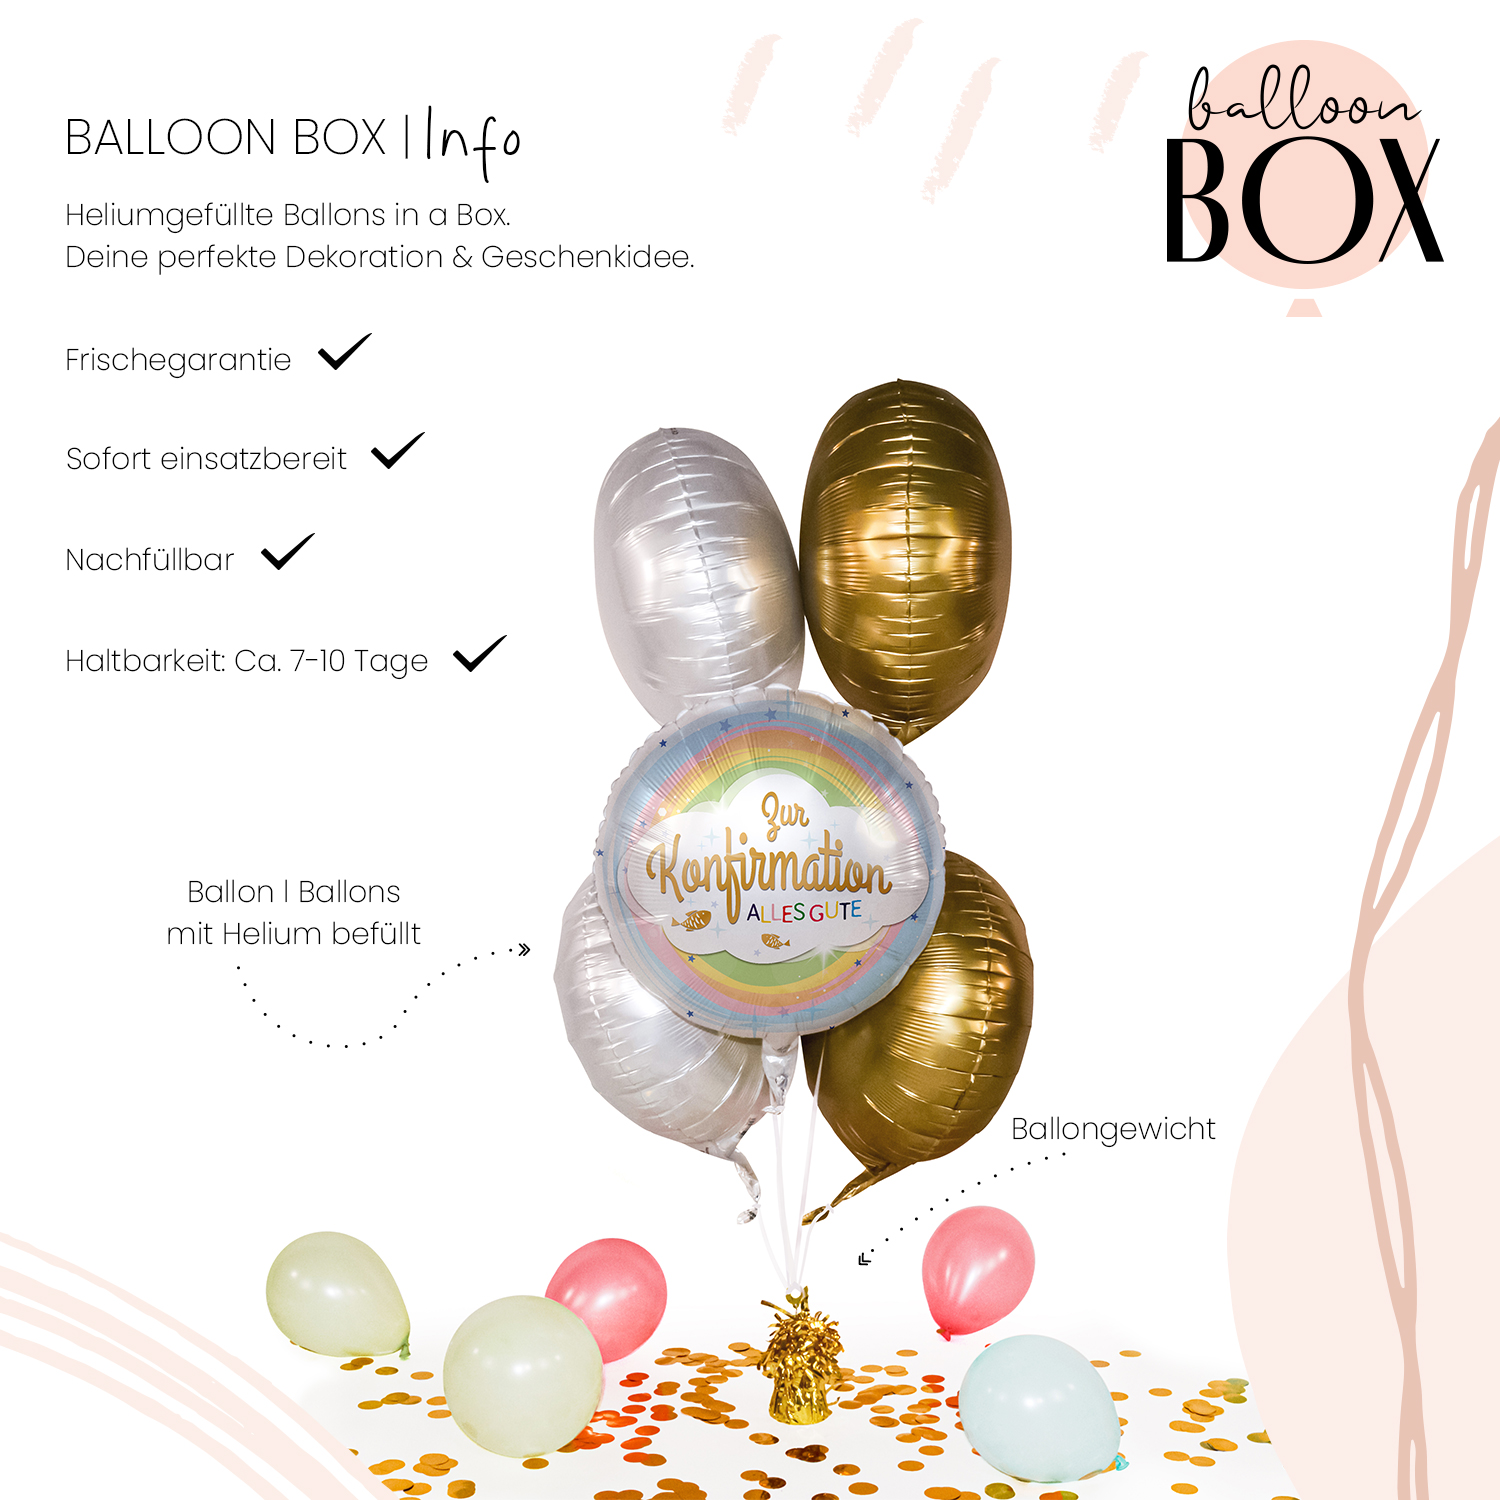 Heliumballon in a Box - Konfirmation Regenbogen